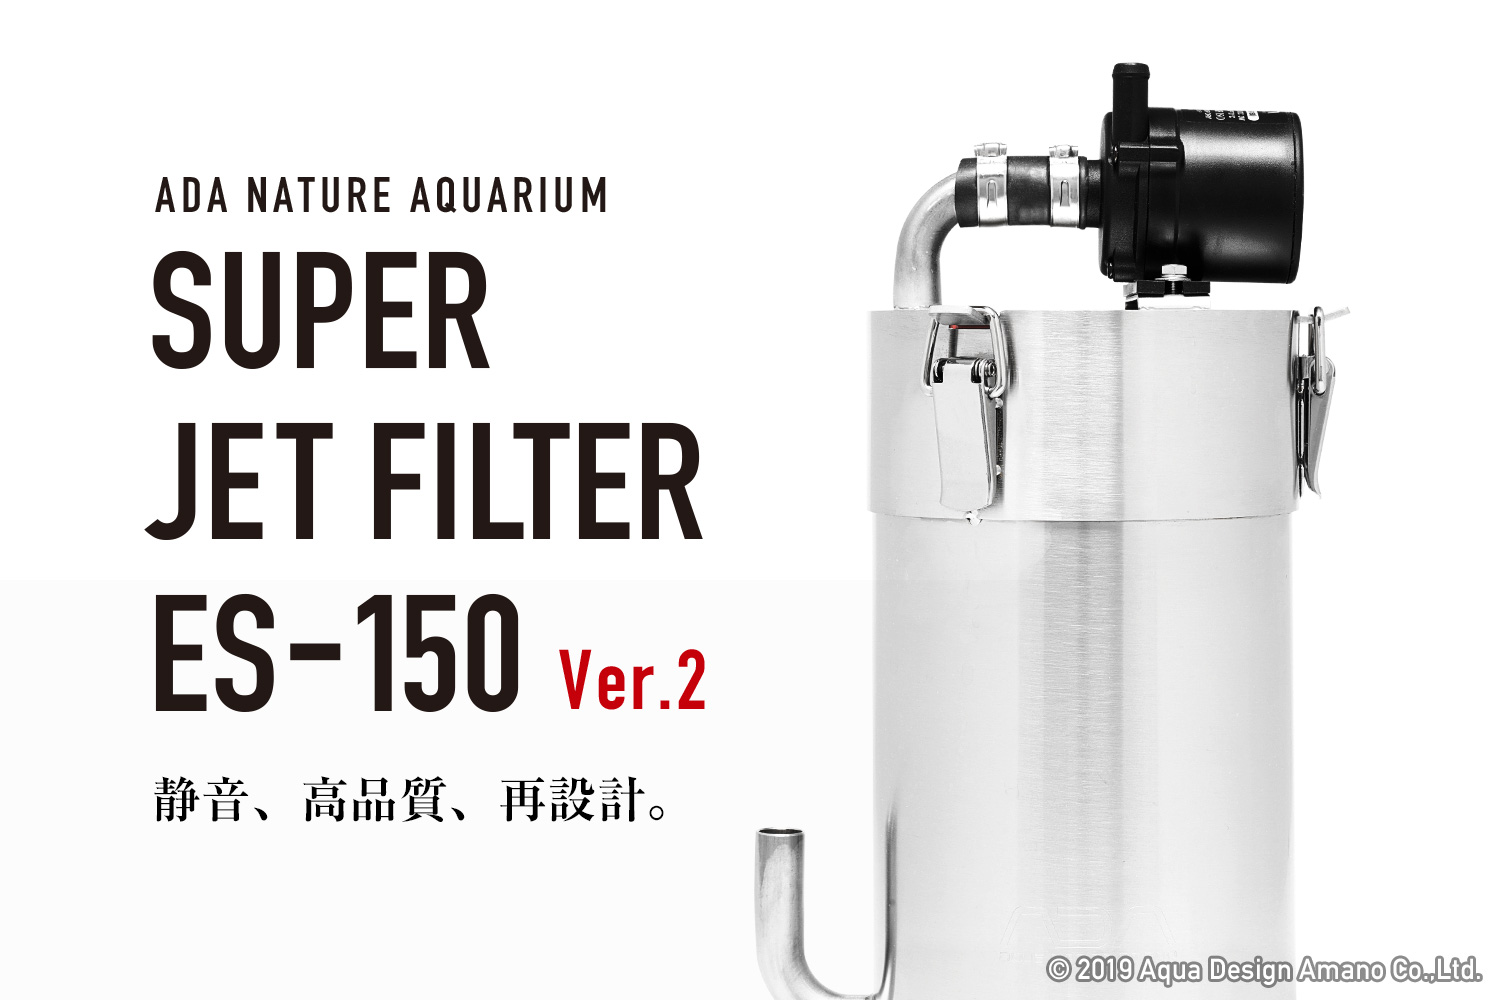 スーパージェットフィルター ES-150 Ver.2 新発売のお知らせ | ADA ...